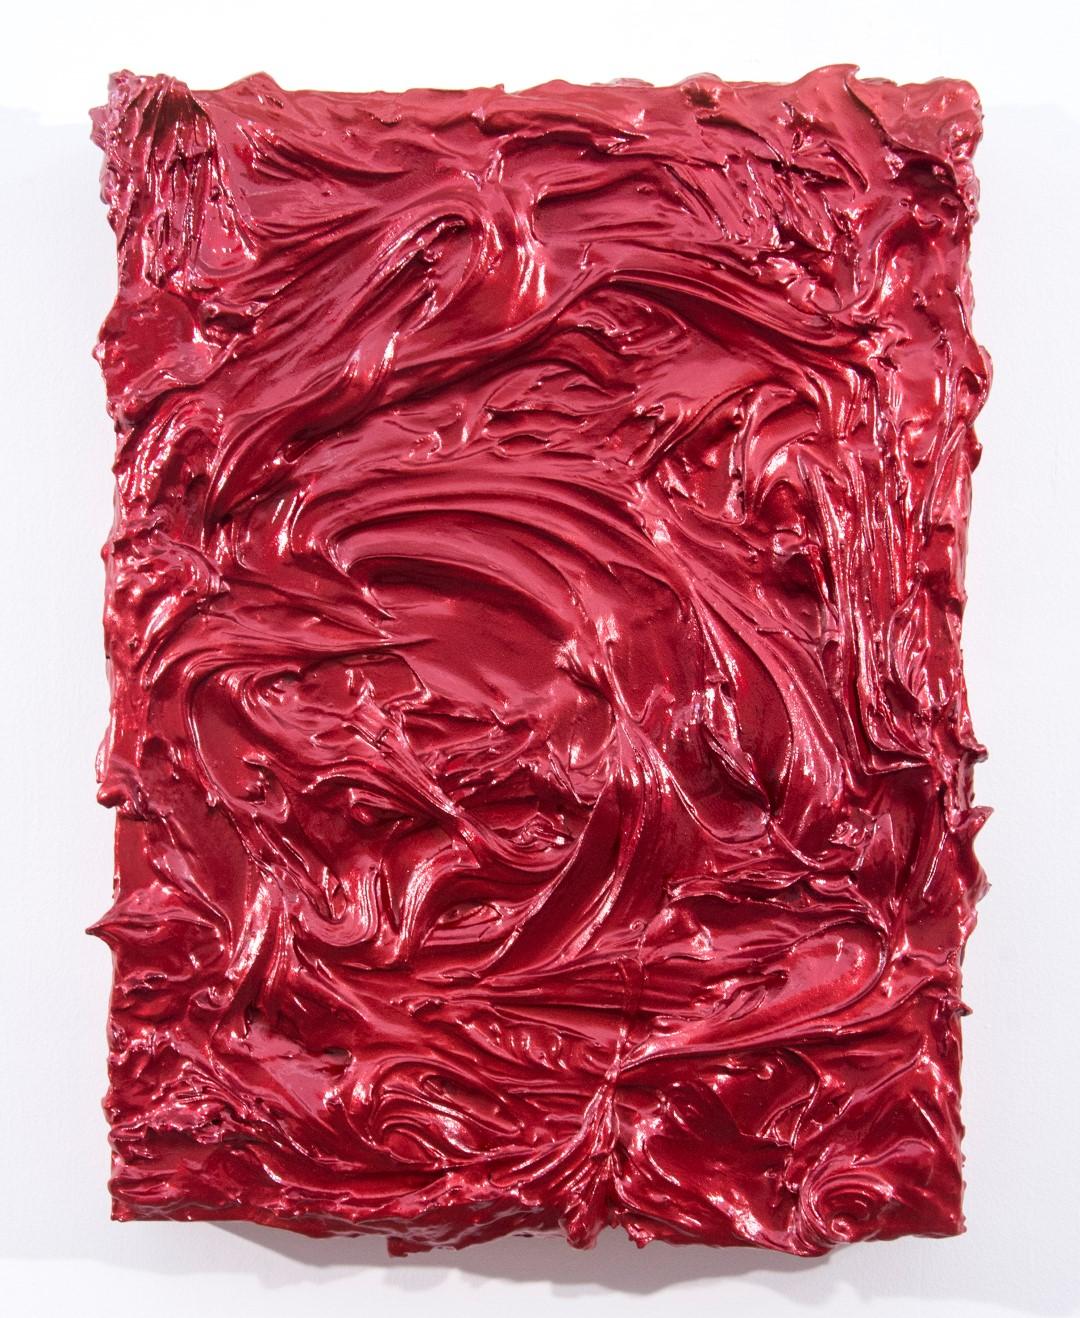 Storm Surge Red - glossy, bright, impasto, abstract, acrylic on panel - Mixed Media Art by Shayne Dark